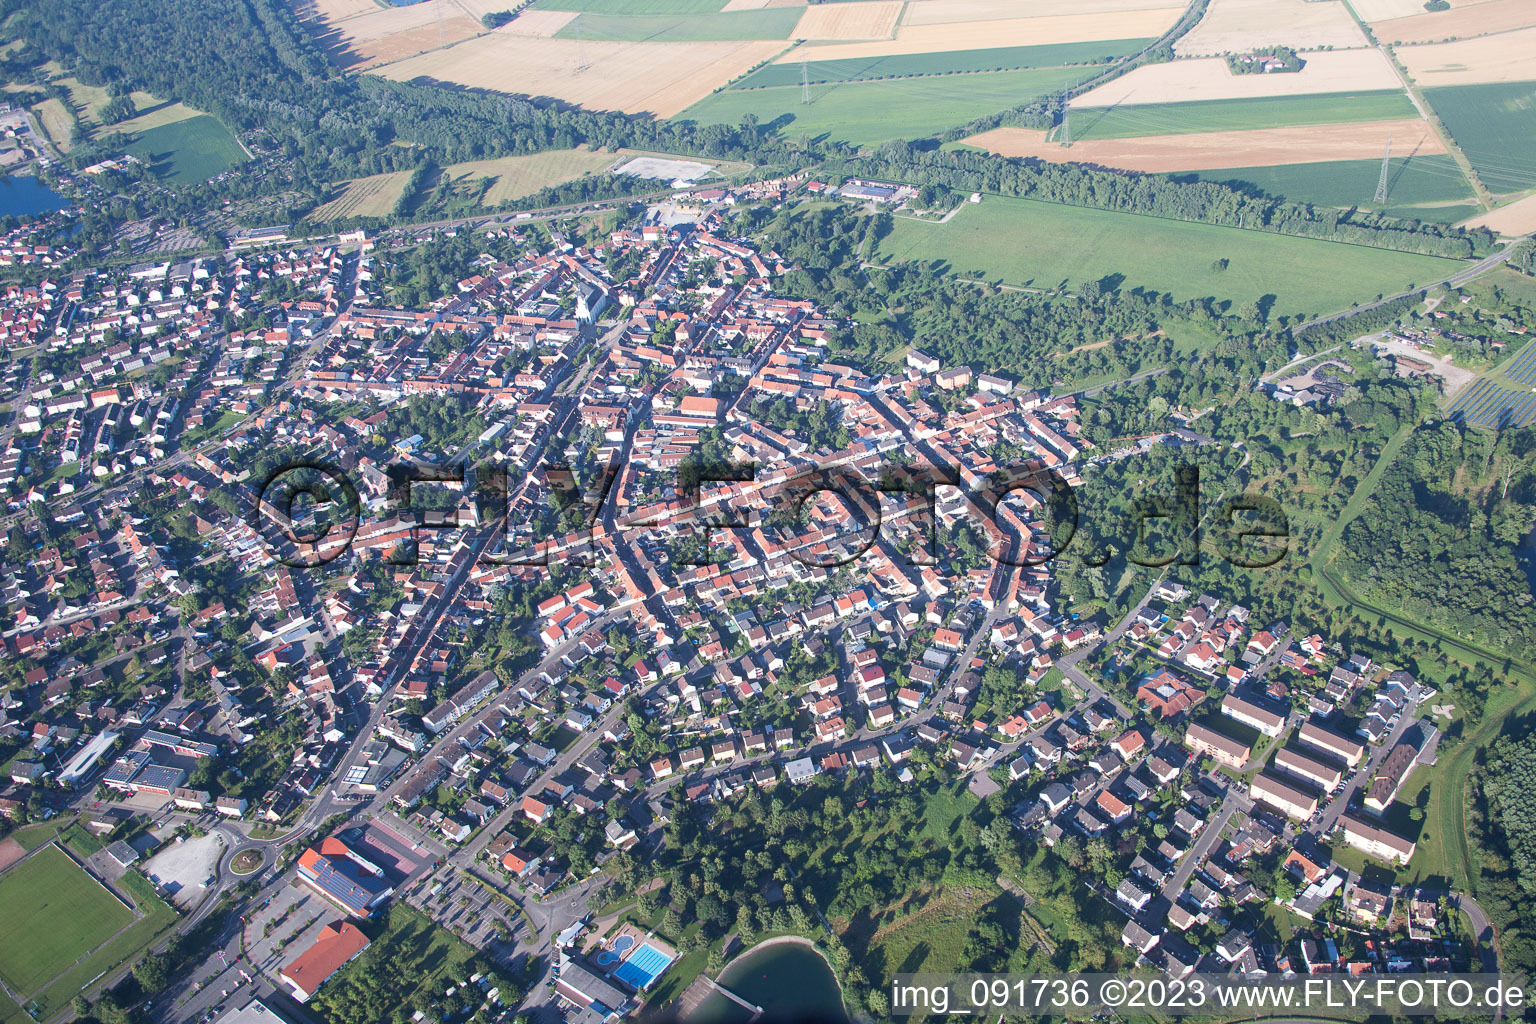 Philippsburg dans le département Bade-Wurtemberg, Allemagne vue d'en haut